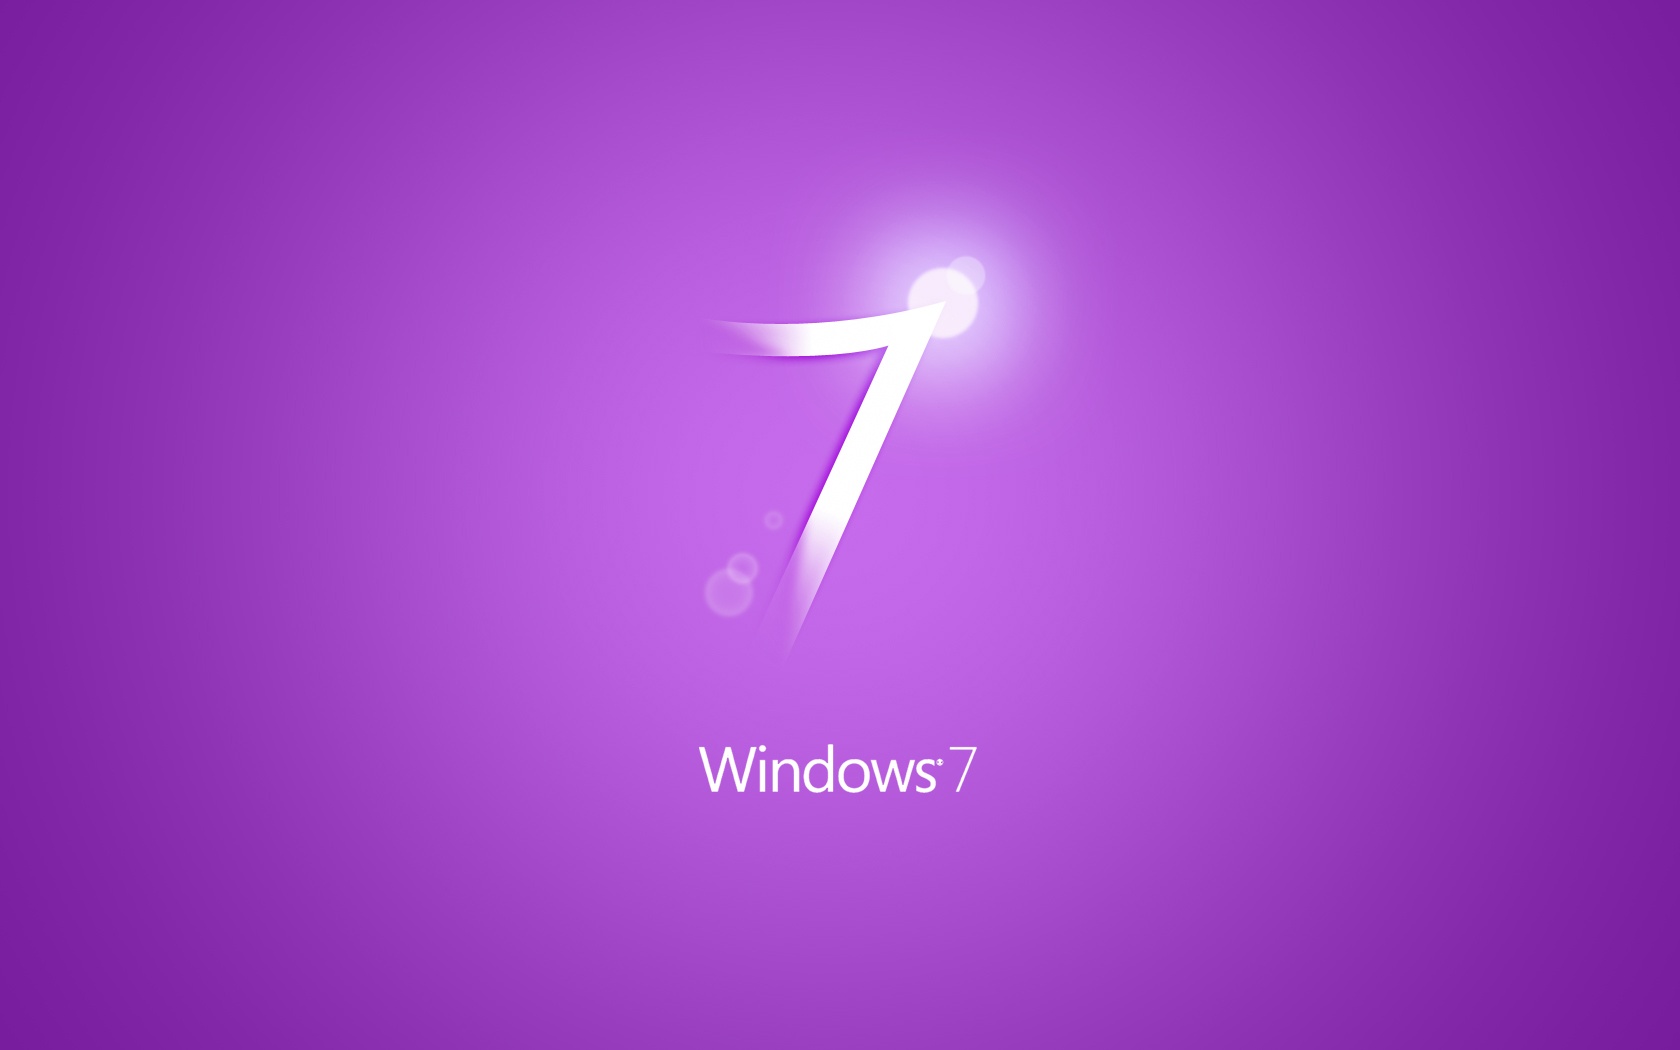 Windows Purple HD Widescreen Wallpaper